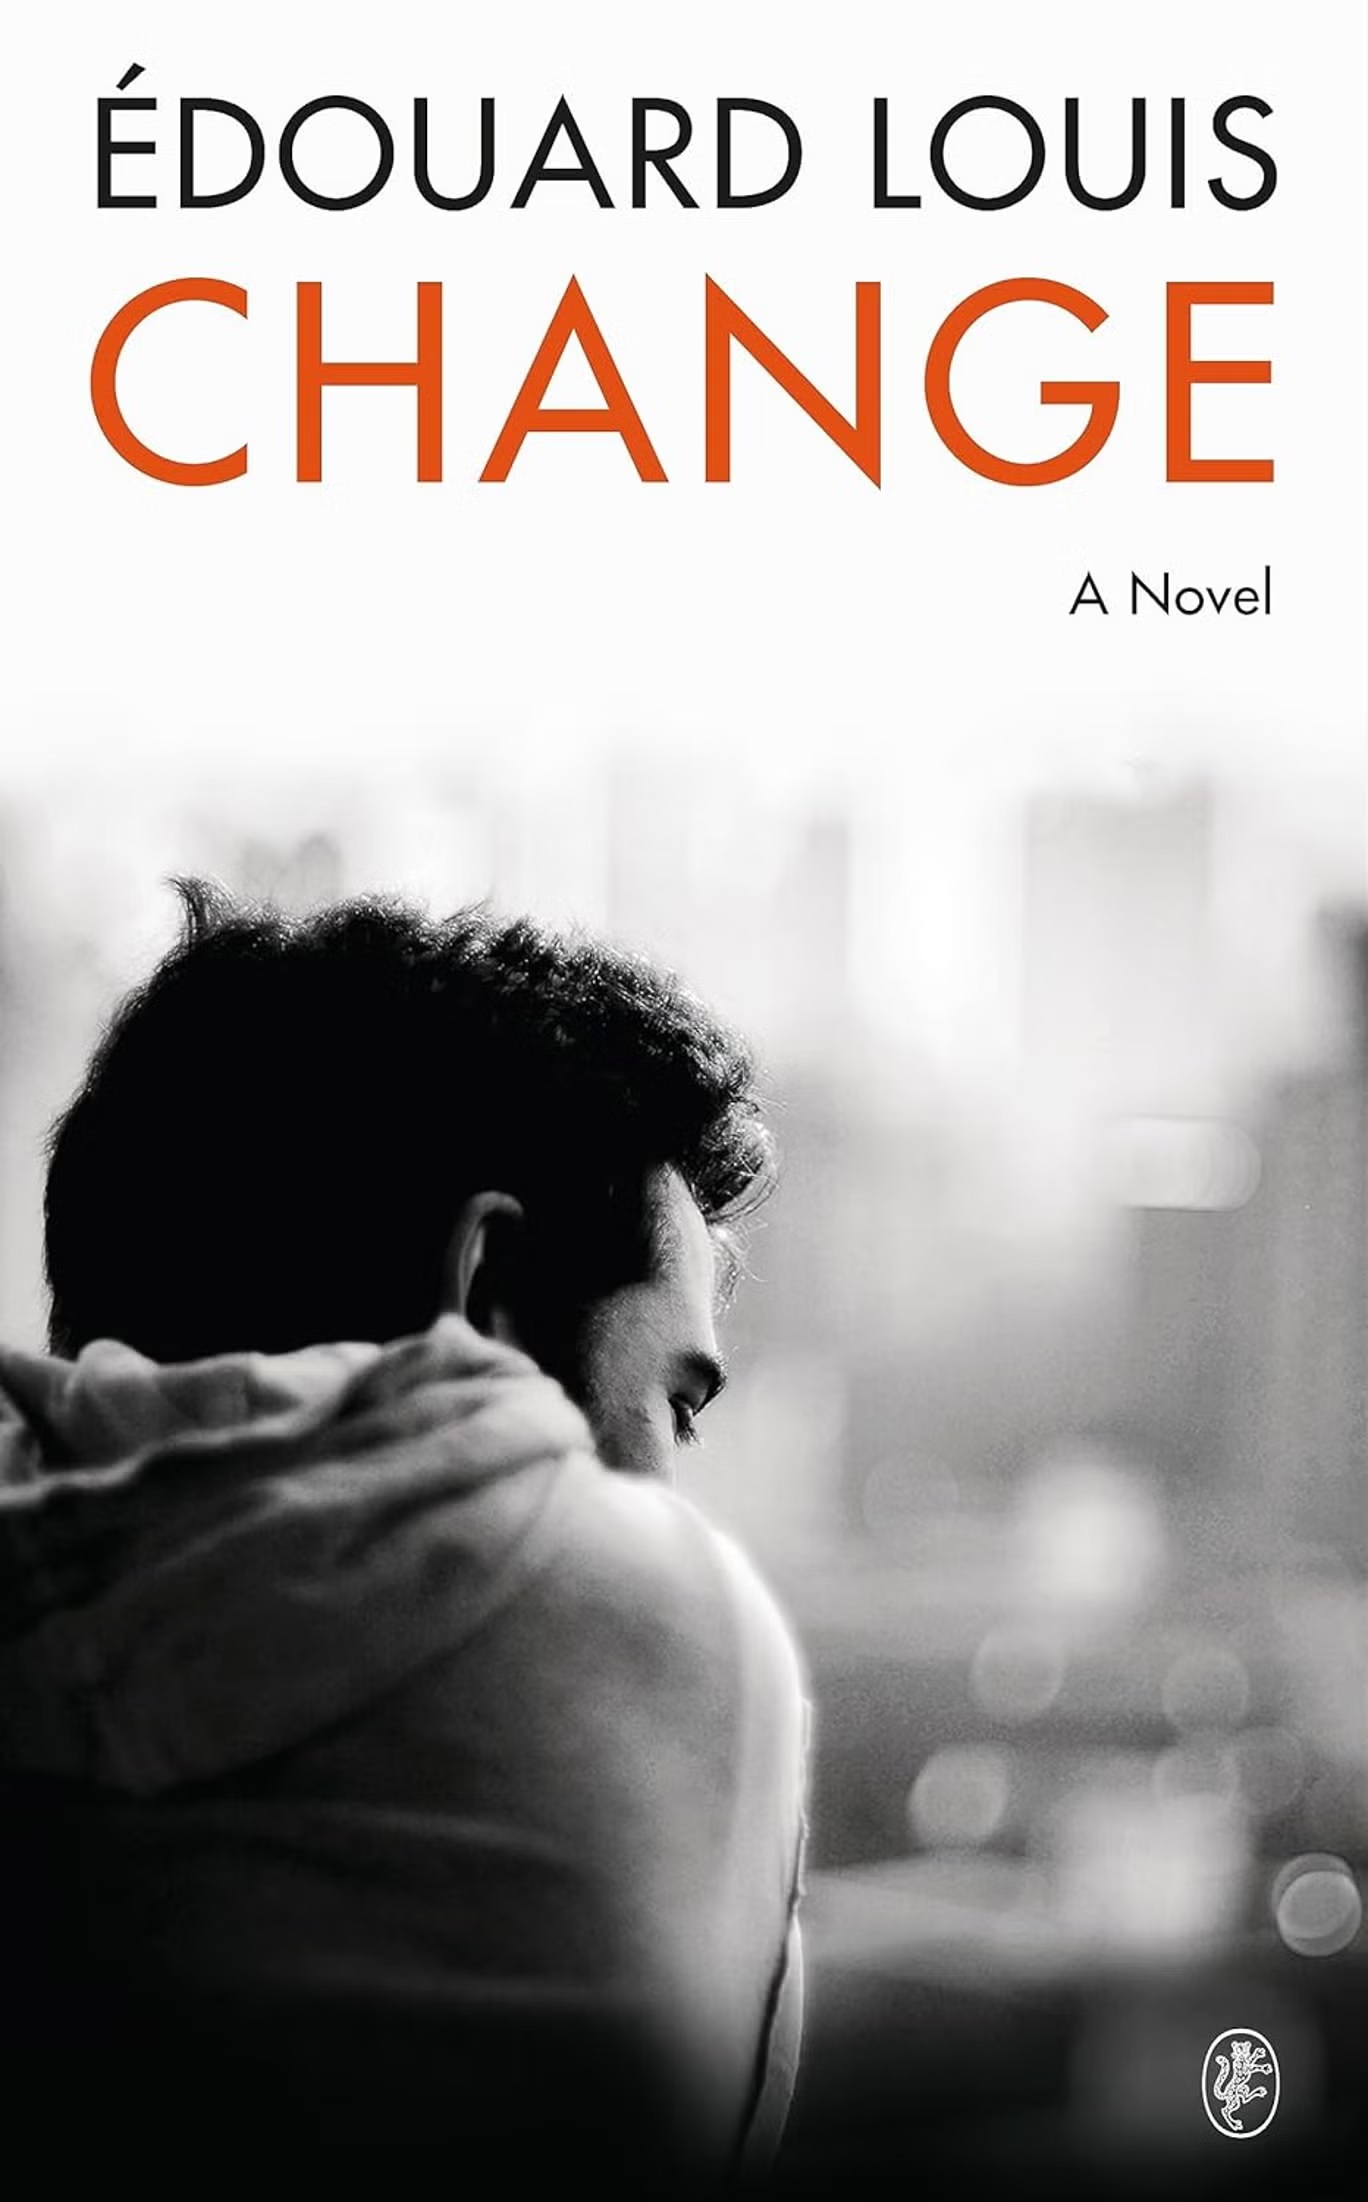 الكتاب الجديد للنجم الأدبي الفرنسي إدوارد لوي بعنوان "تغيير" يسلط الضوء على محاولاته تجاوز ماضيه عبر التعليم (مصدر)